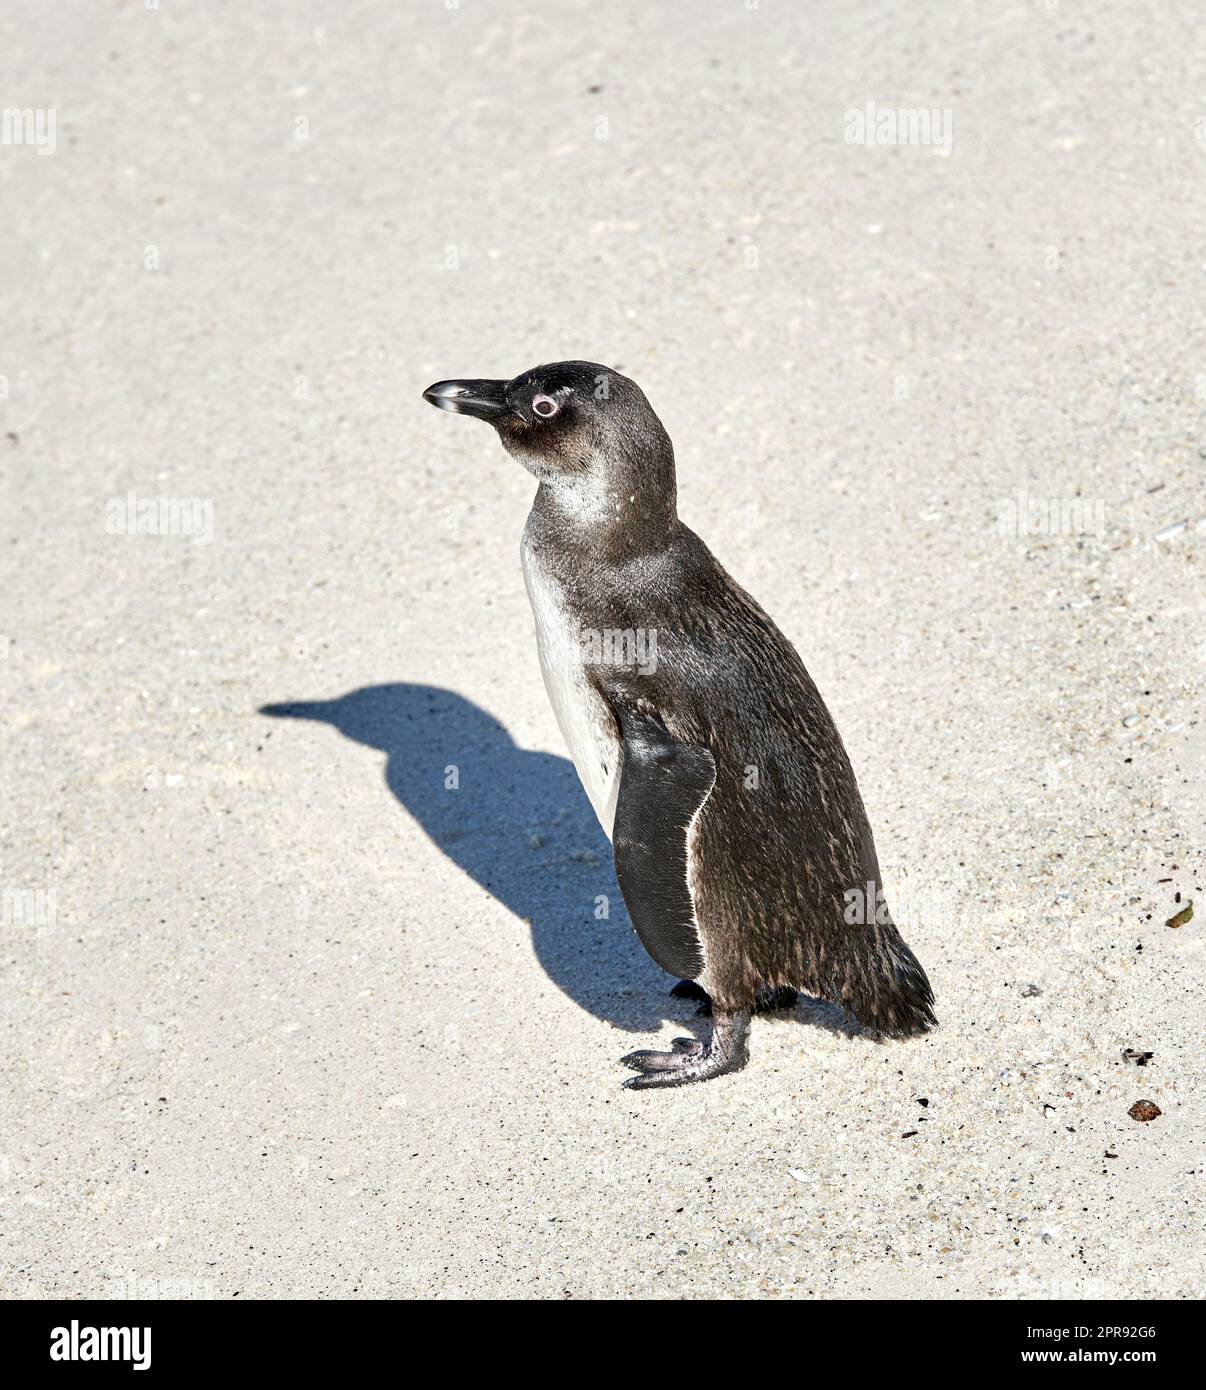 Des pingouins africains à pieds noirs rayant, nettoyant ou auto-toilettant sur la plage de sable d'une réserve de conservation en Afrique du Sud. Protection des oiseaux aquatiques, des espèces marines ou marines menacées pour le tourisme Banque D'Images